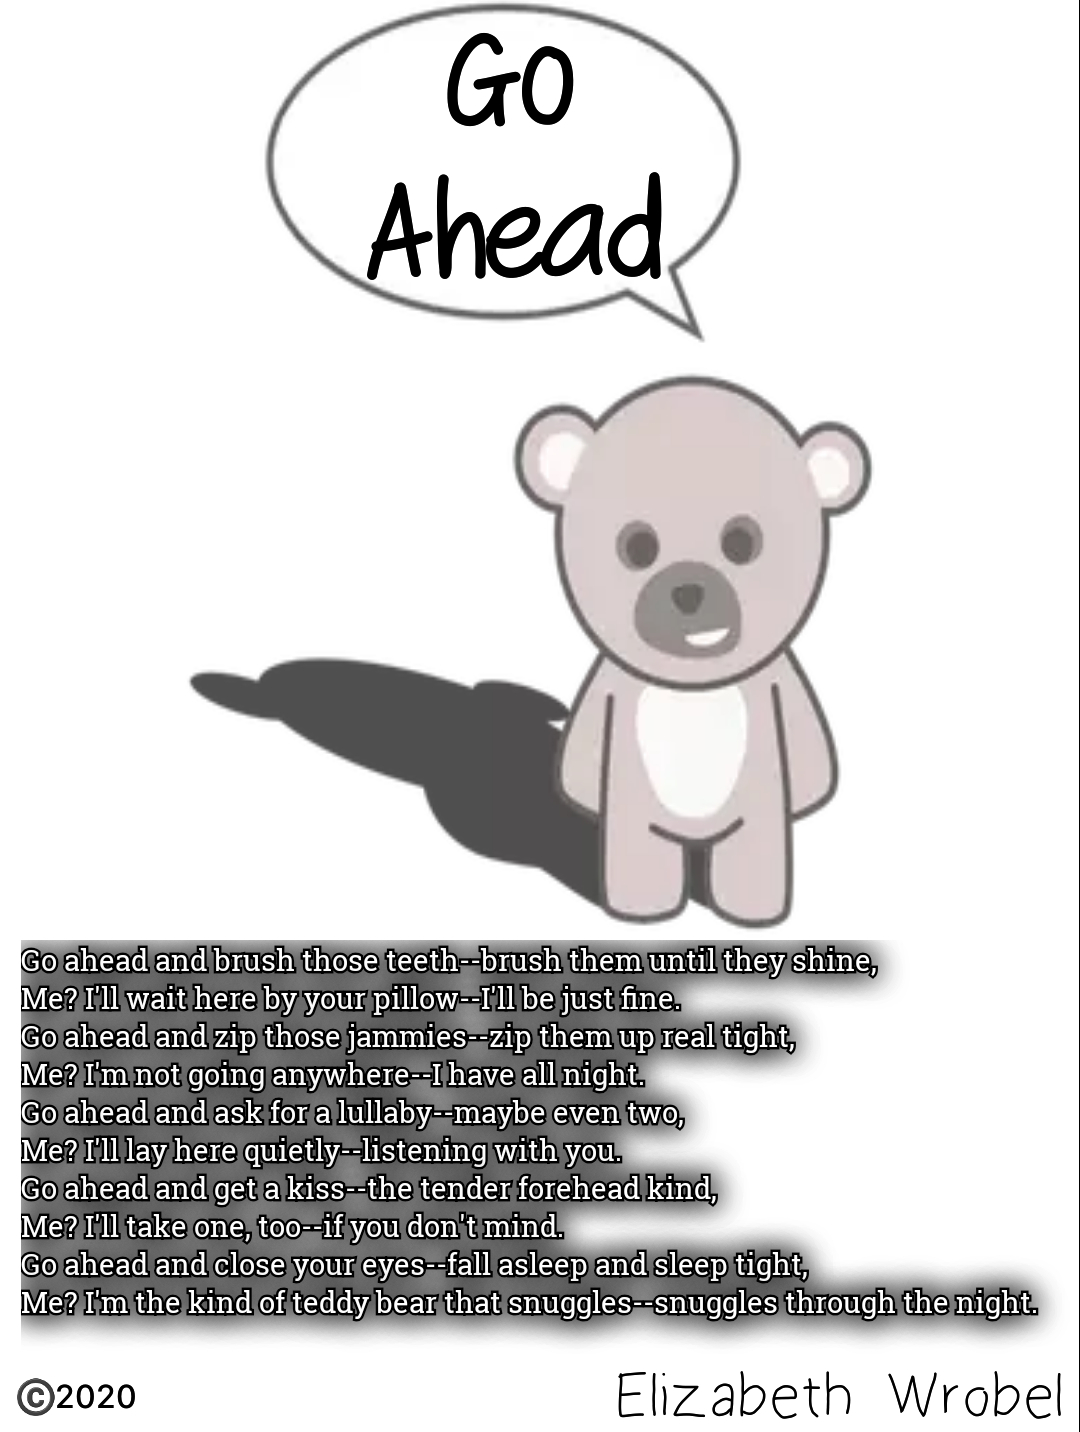 Go Ahead a teddy bear rhyme by Elizabeth Wrobel